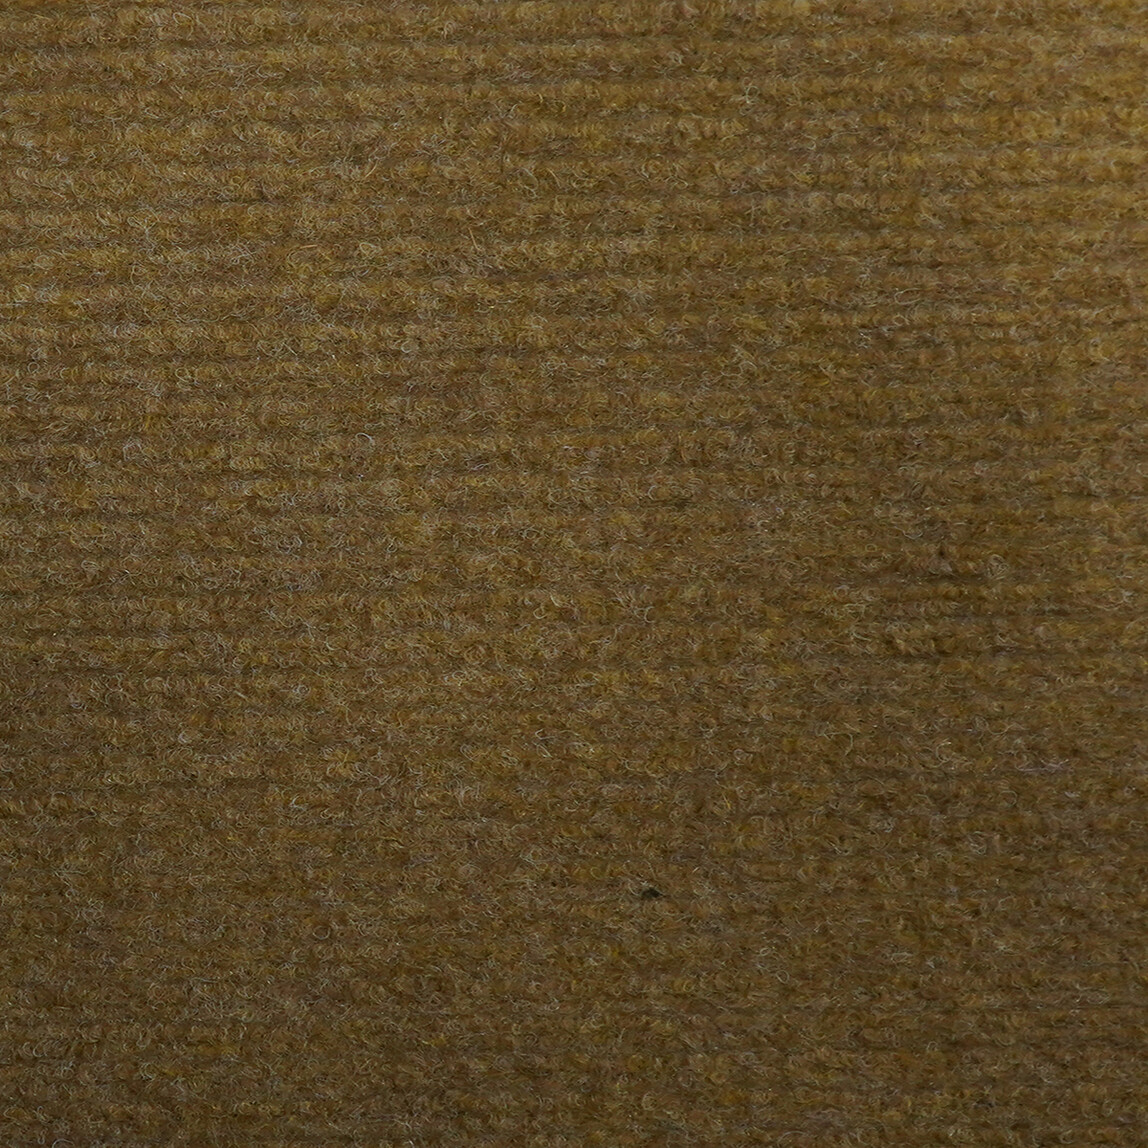    Güven Collection 40x60 cm Deve Tüyü Keçe Paspas  